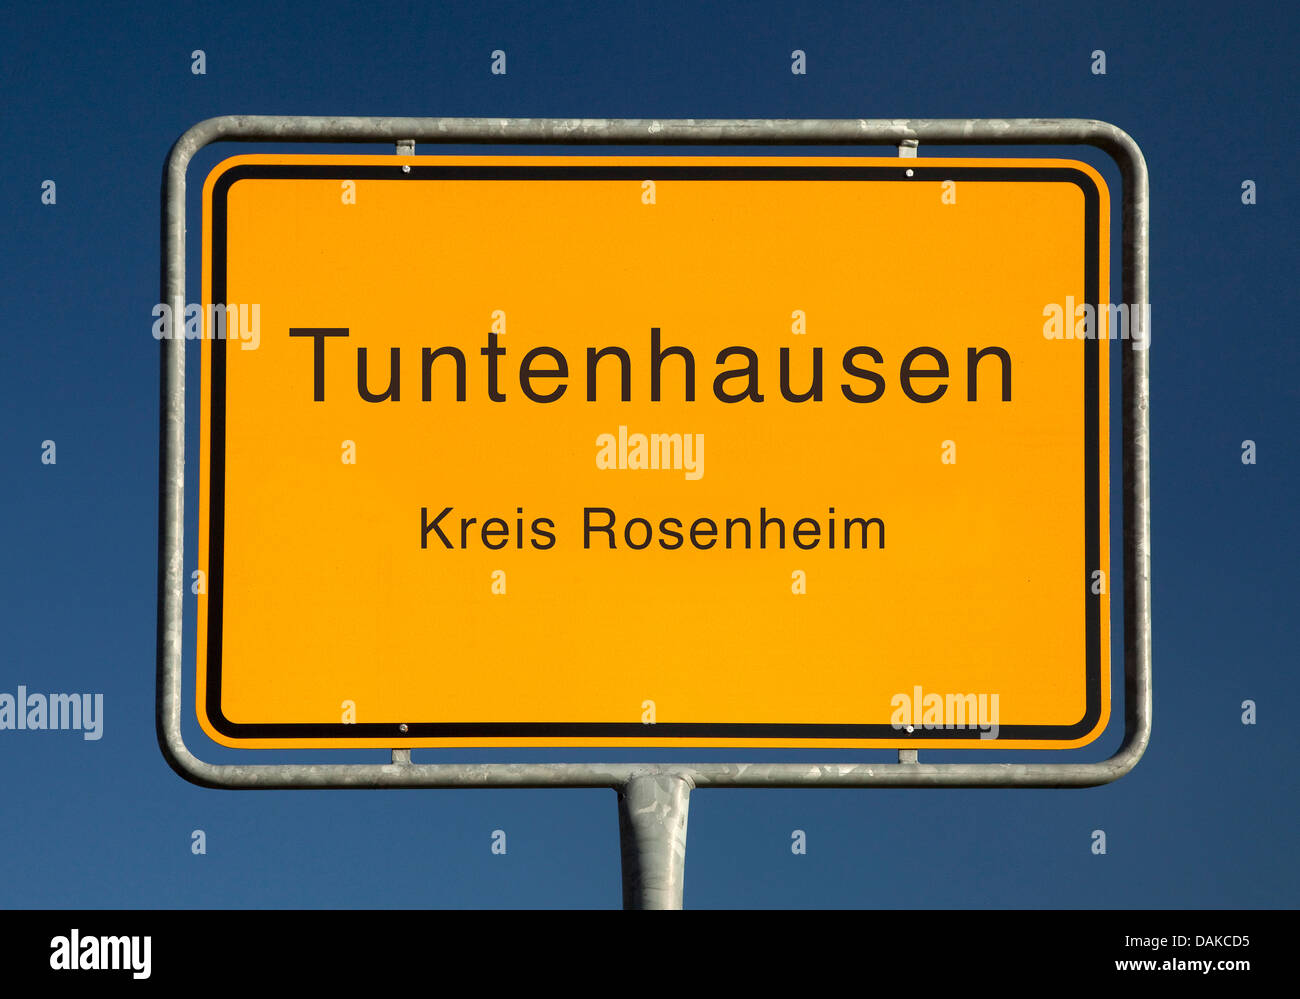 Tuntenhausen place name sign, Germany, Bavaria, Rosenheim, Tuntenhausen Stock Photo